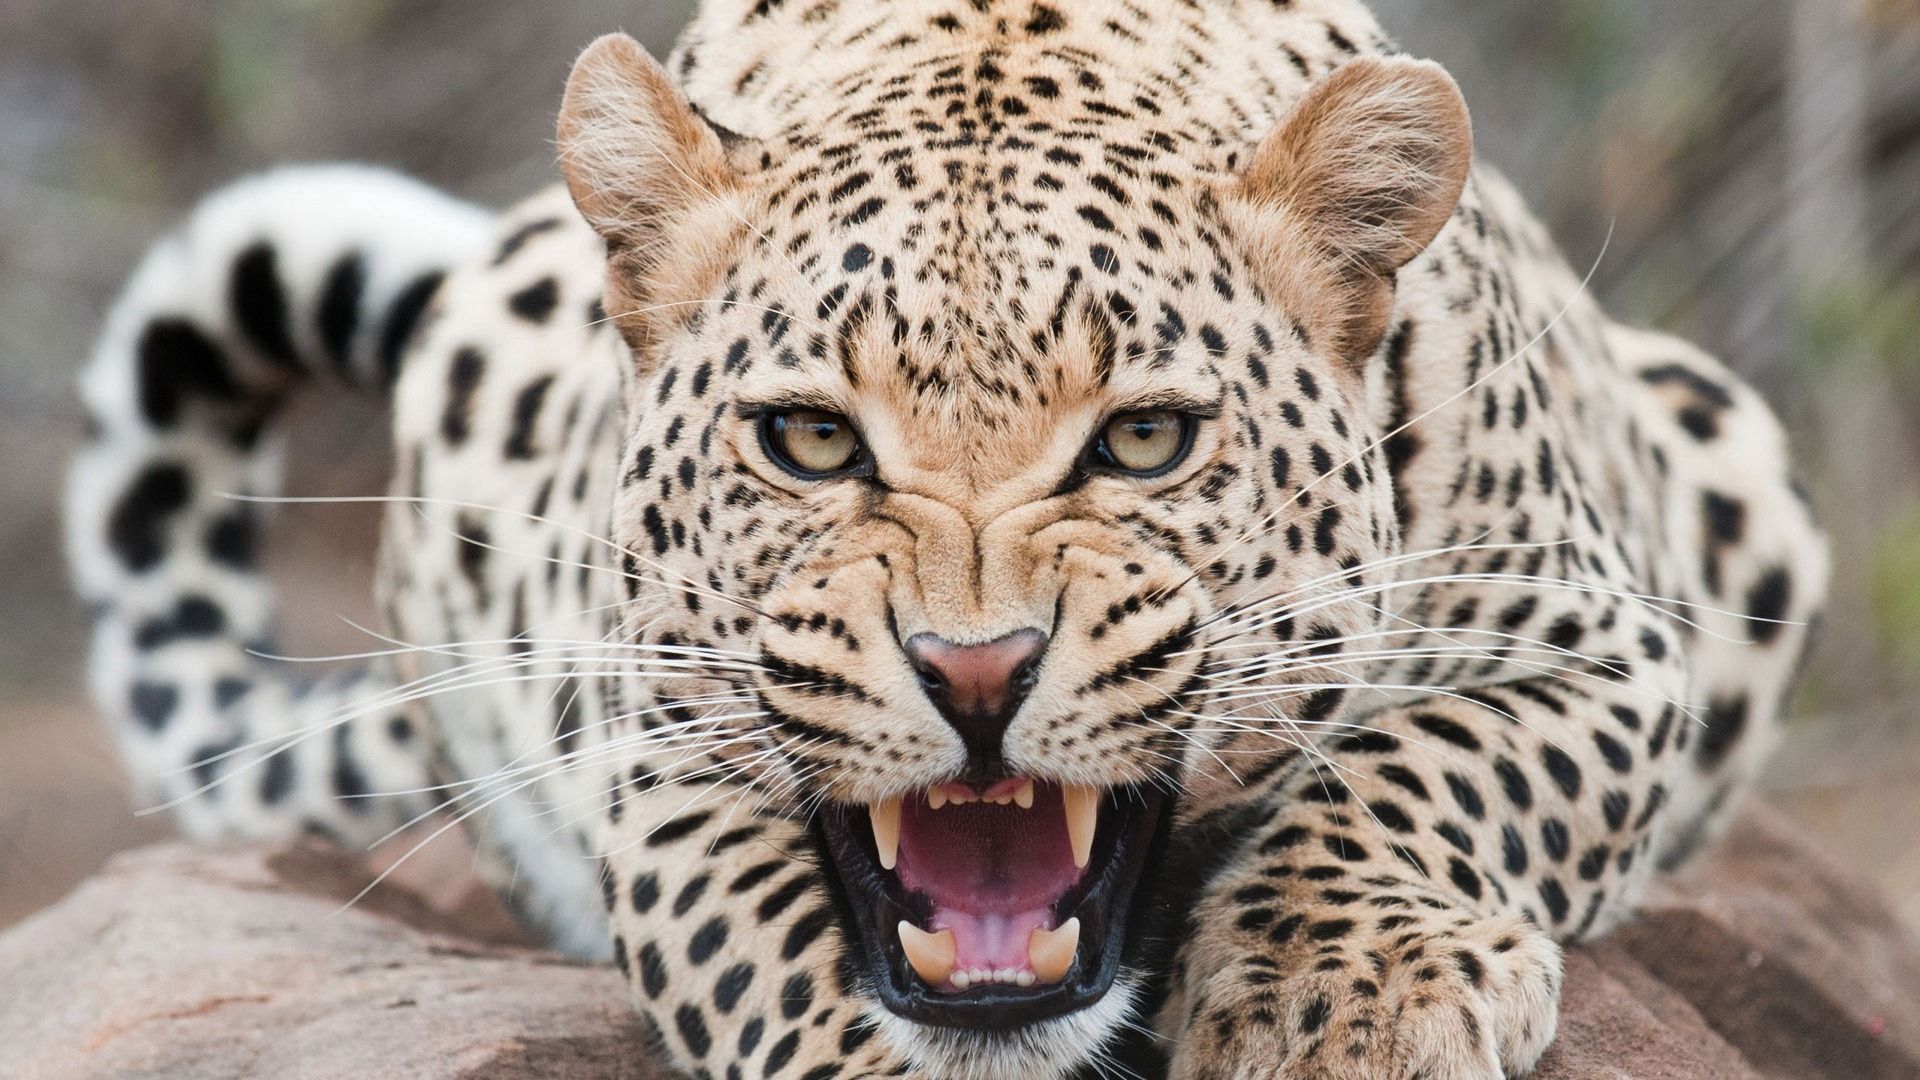 aggression, muzzle, grin, predator, animals, leopard cellphone